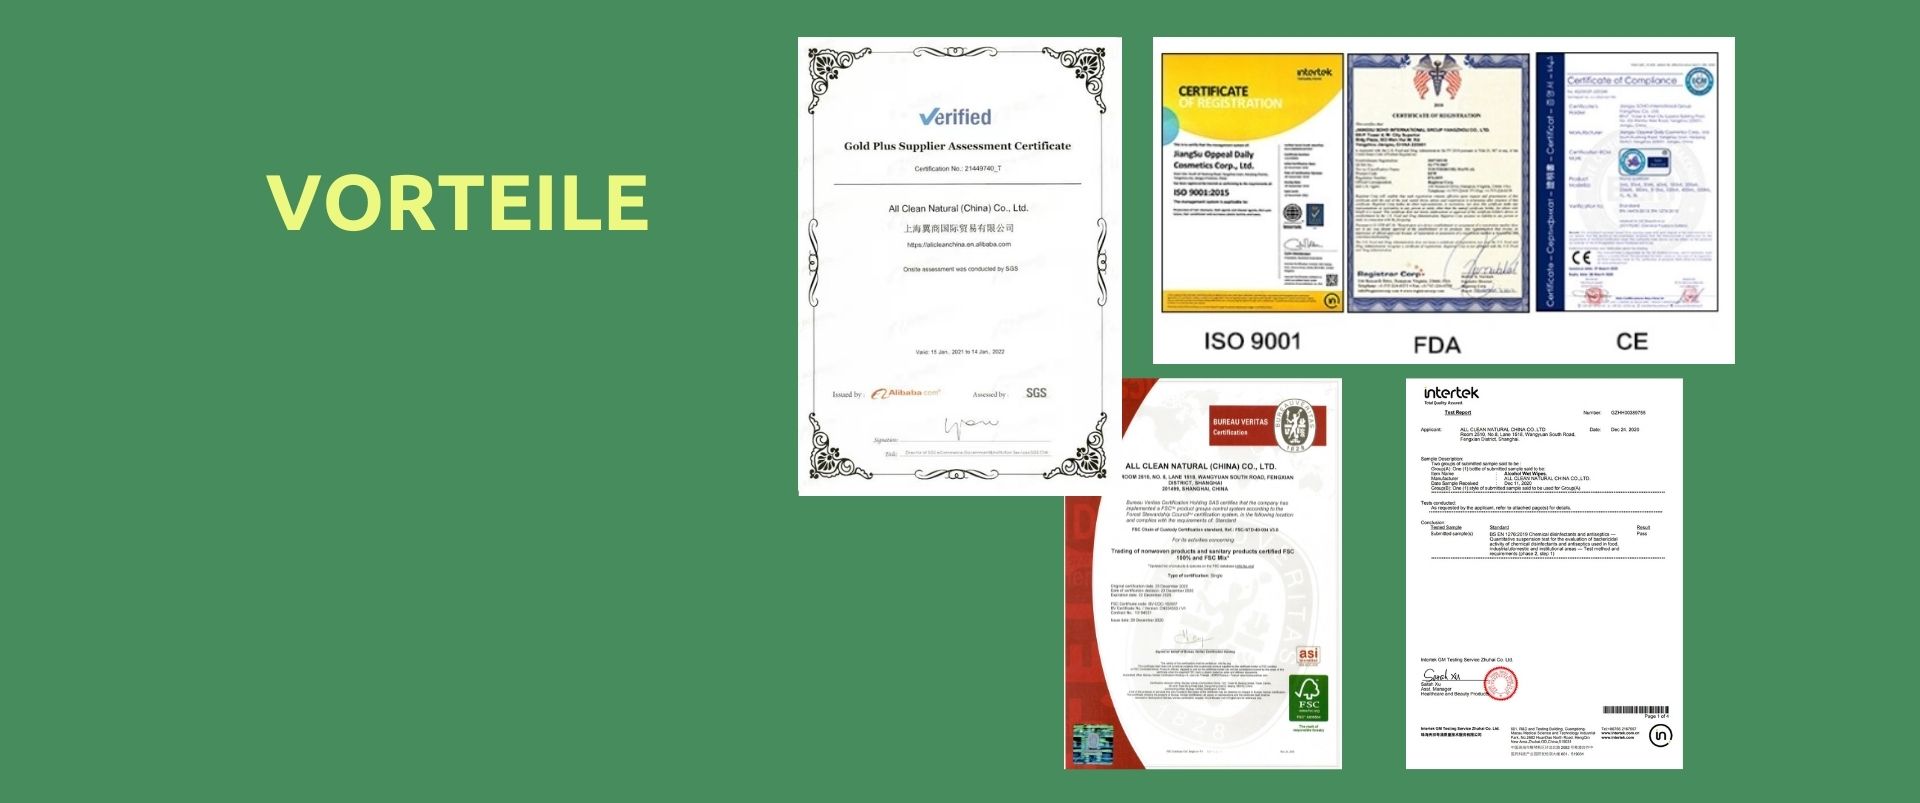 Zertifiziert von SGS.<br />
Mit Zertifizierungen nach <br />
ISO 9001, FDA, FSC, CE.